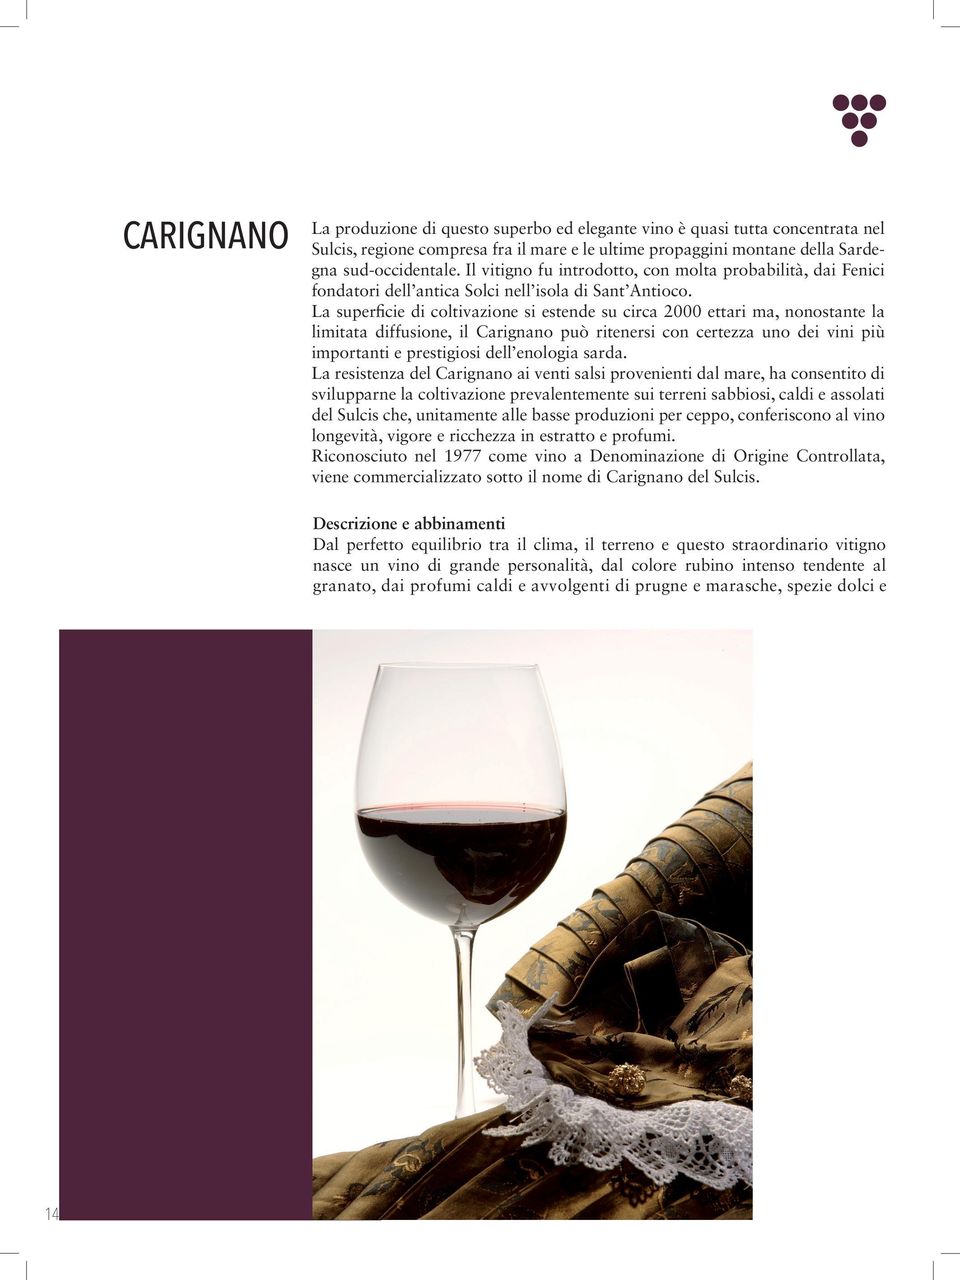 La superficie di coltivazione si estende su circa 2000 ettari ma, nonostante la limitata diffusione, il Carignano può ritenersi con certezza uno dei vini più importanti e prestigiosi dell enologia